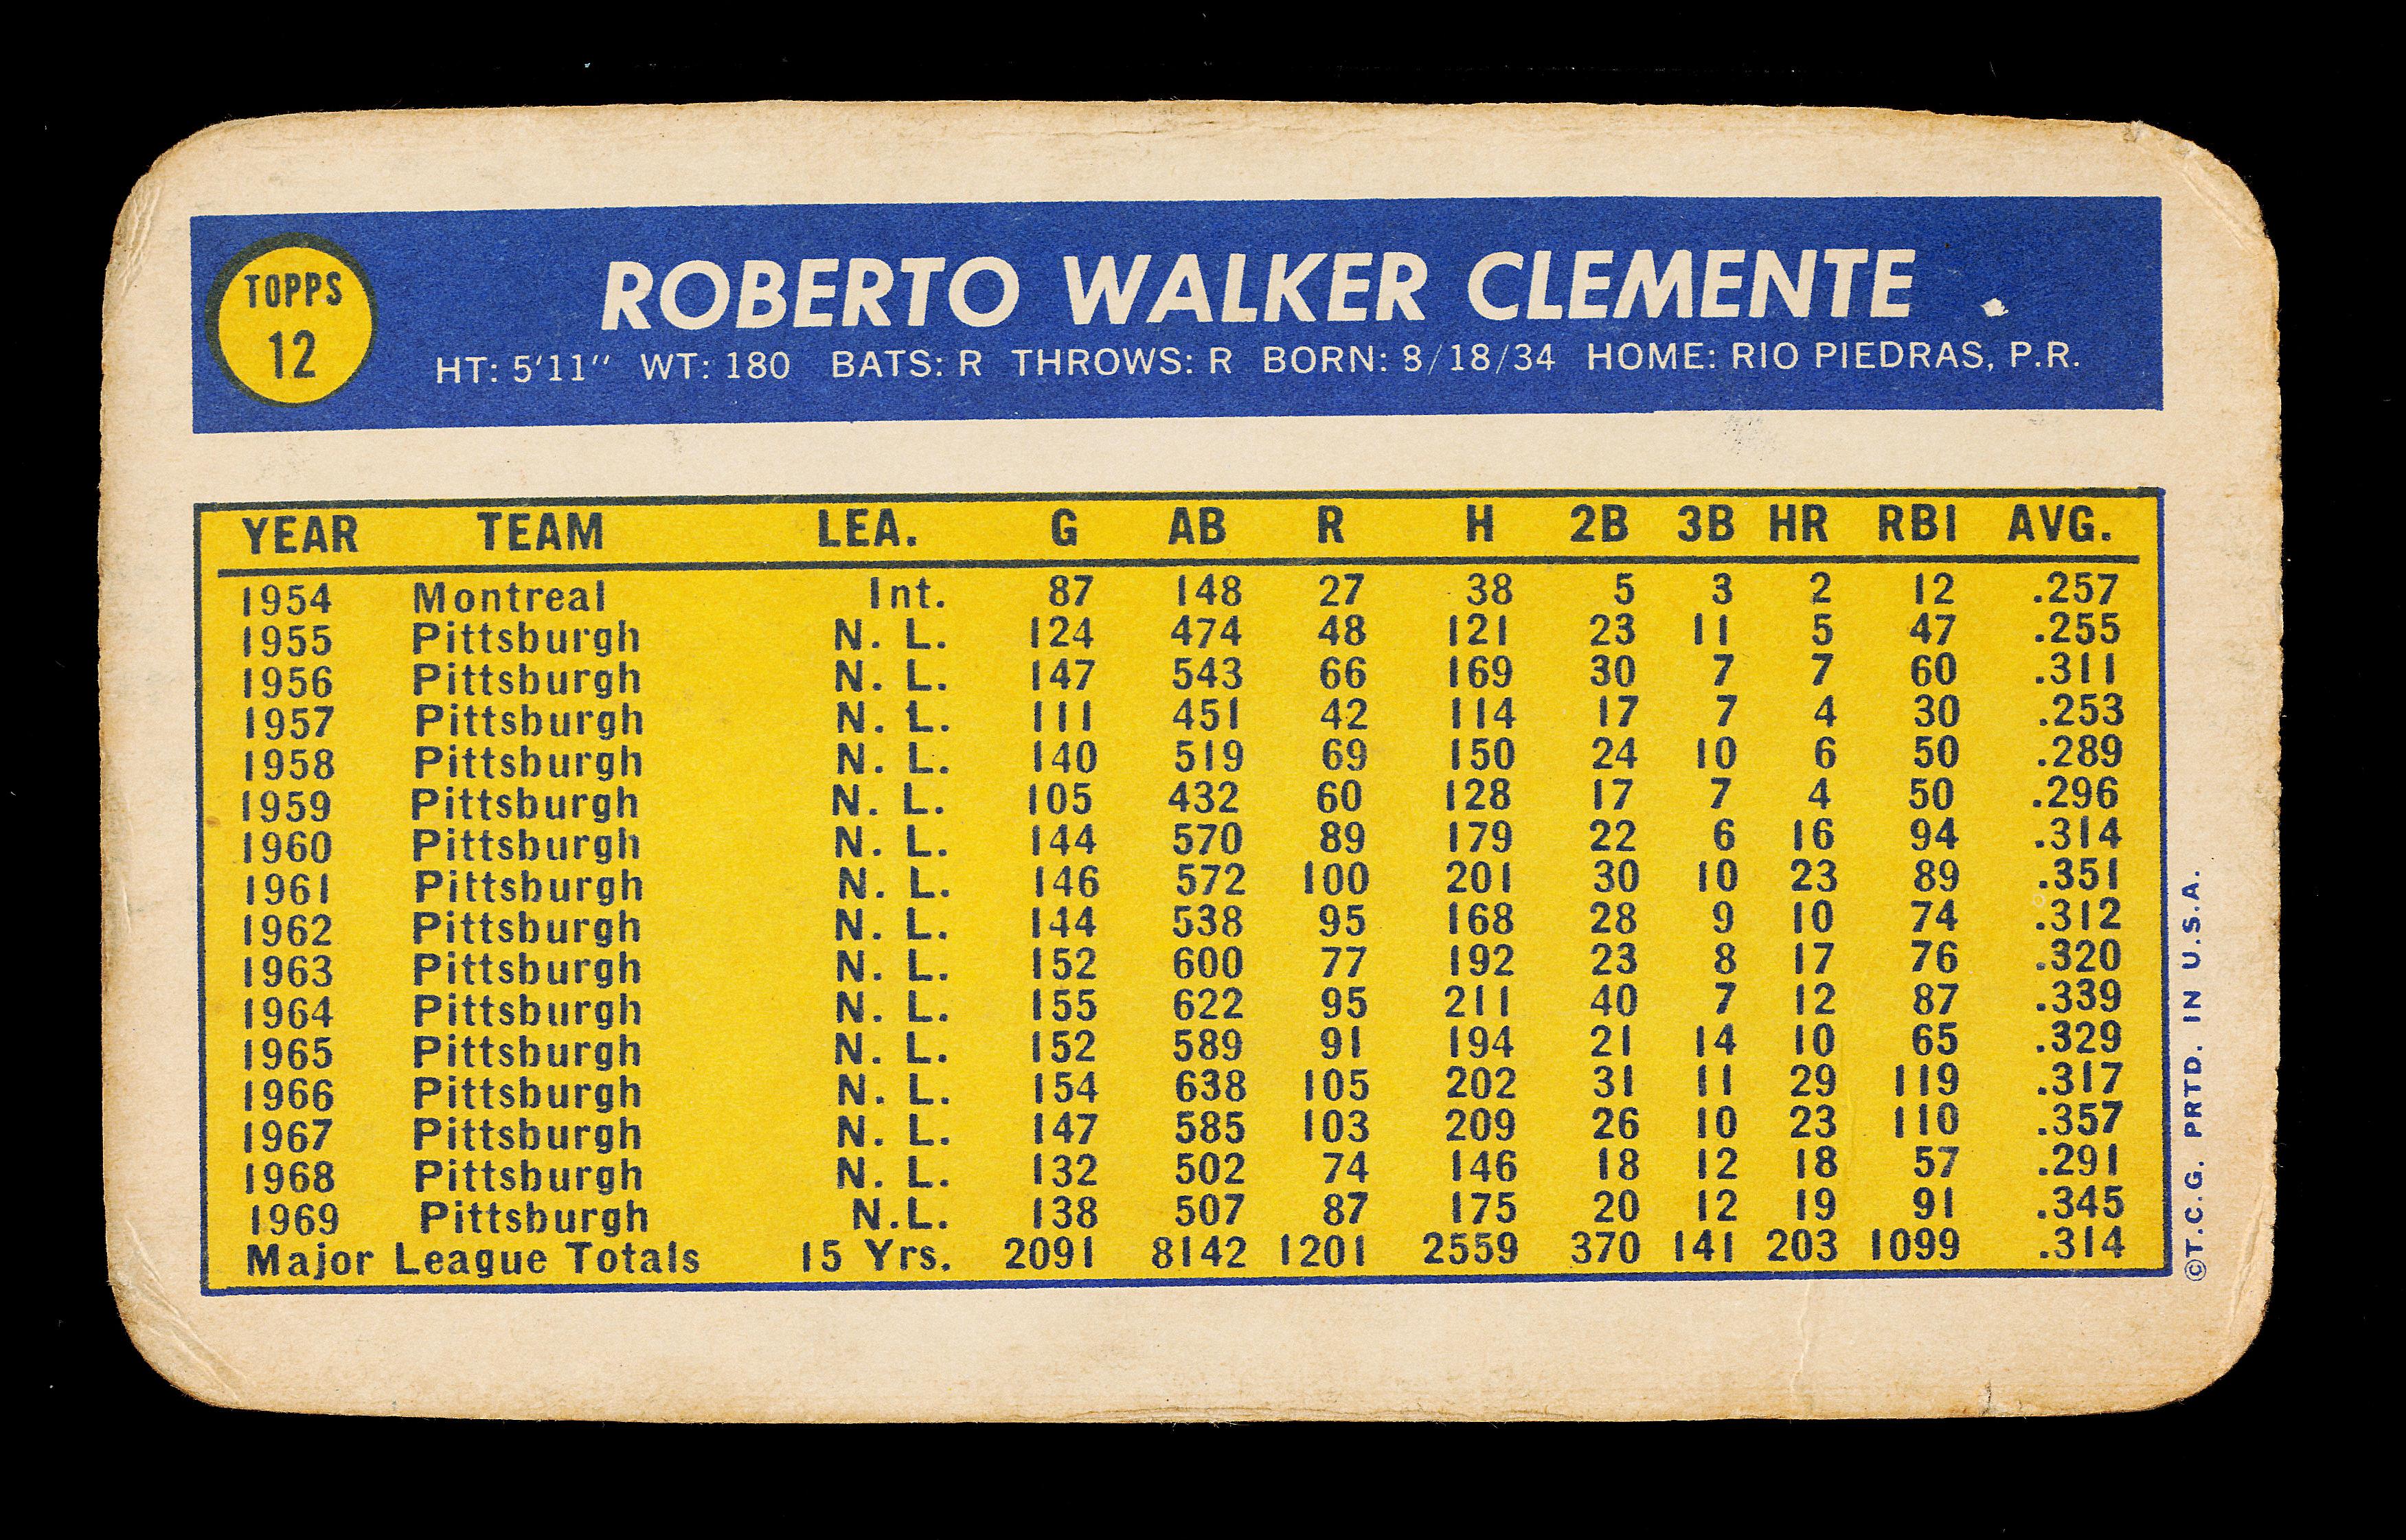 1970 Topps Super Baseball Card #12 Hall of Famer Roberto Clemente Pittsburg